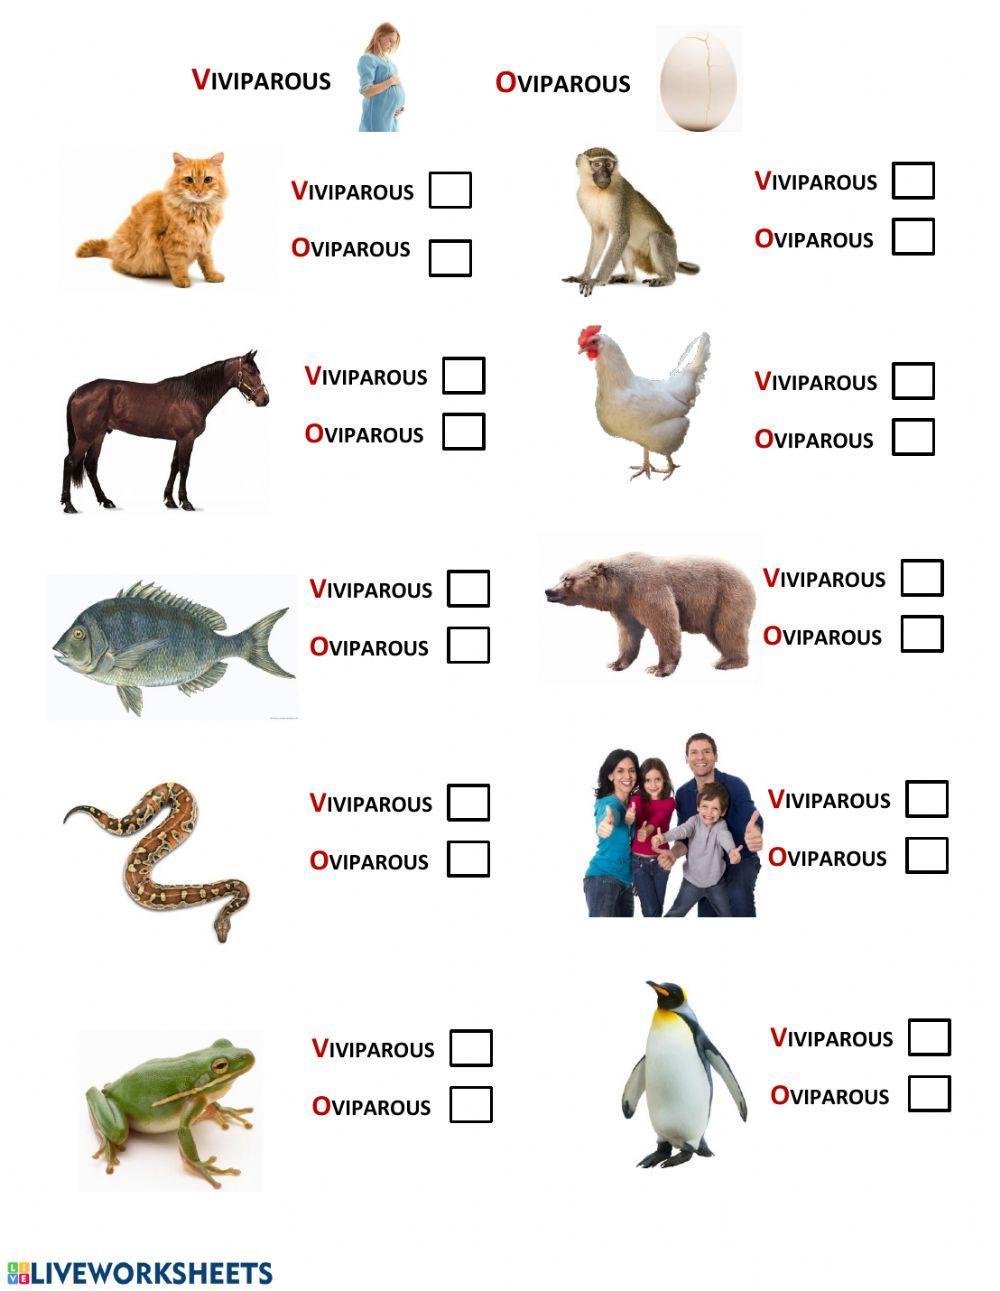 Oviparous and Viviparous Animals